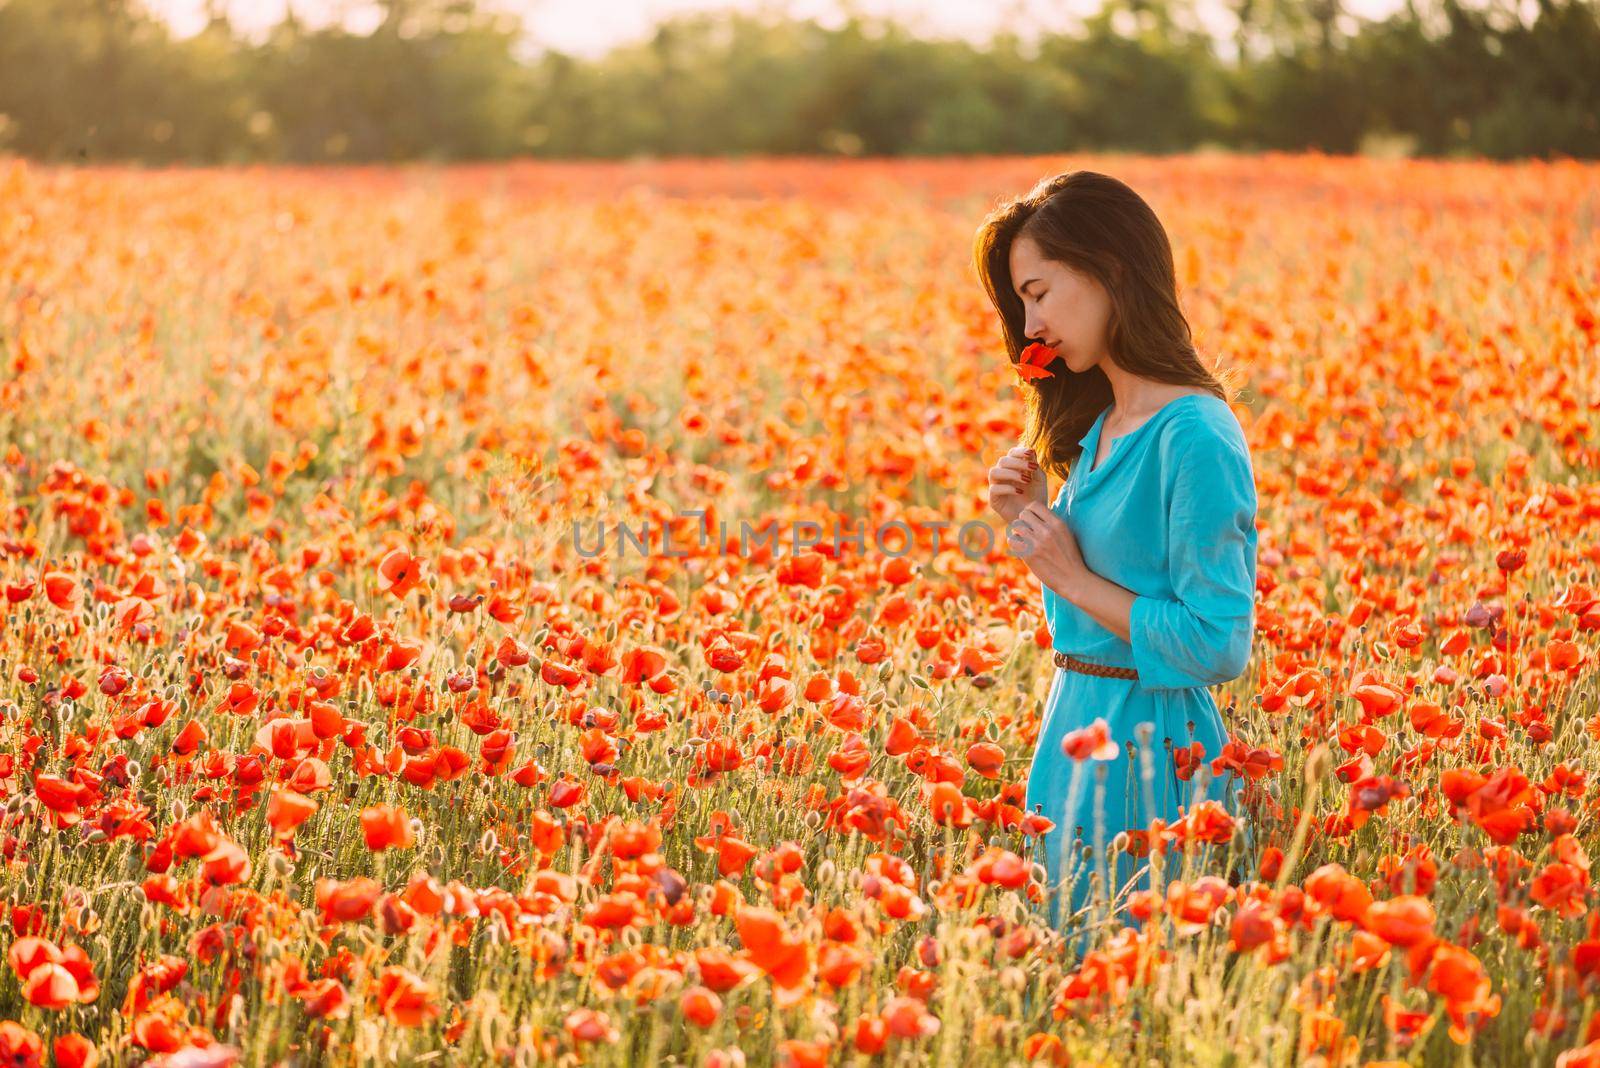 Romantic beautiful woman smelling a red poppy flower in summer field. by alexAleksei